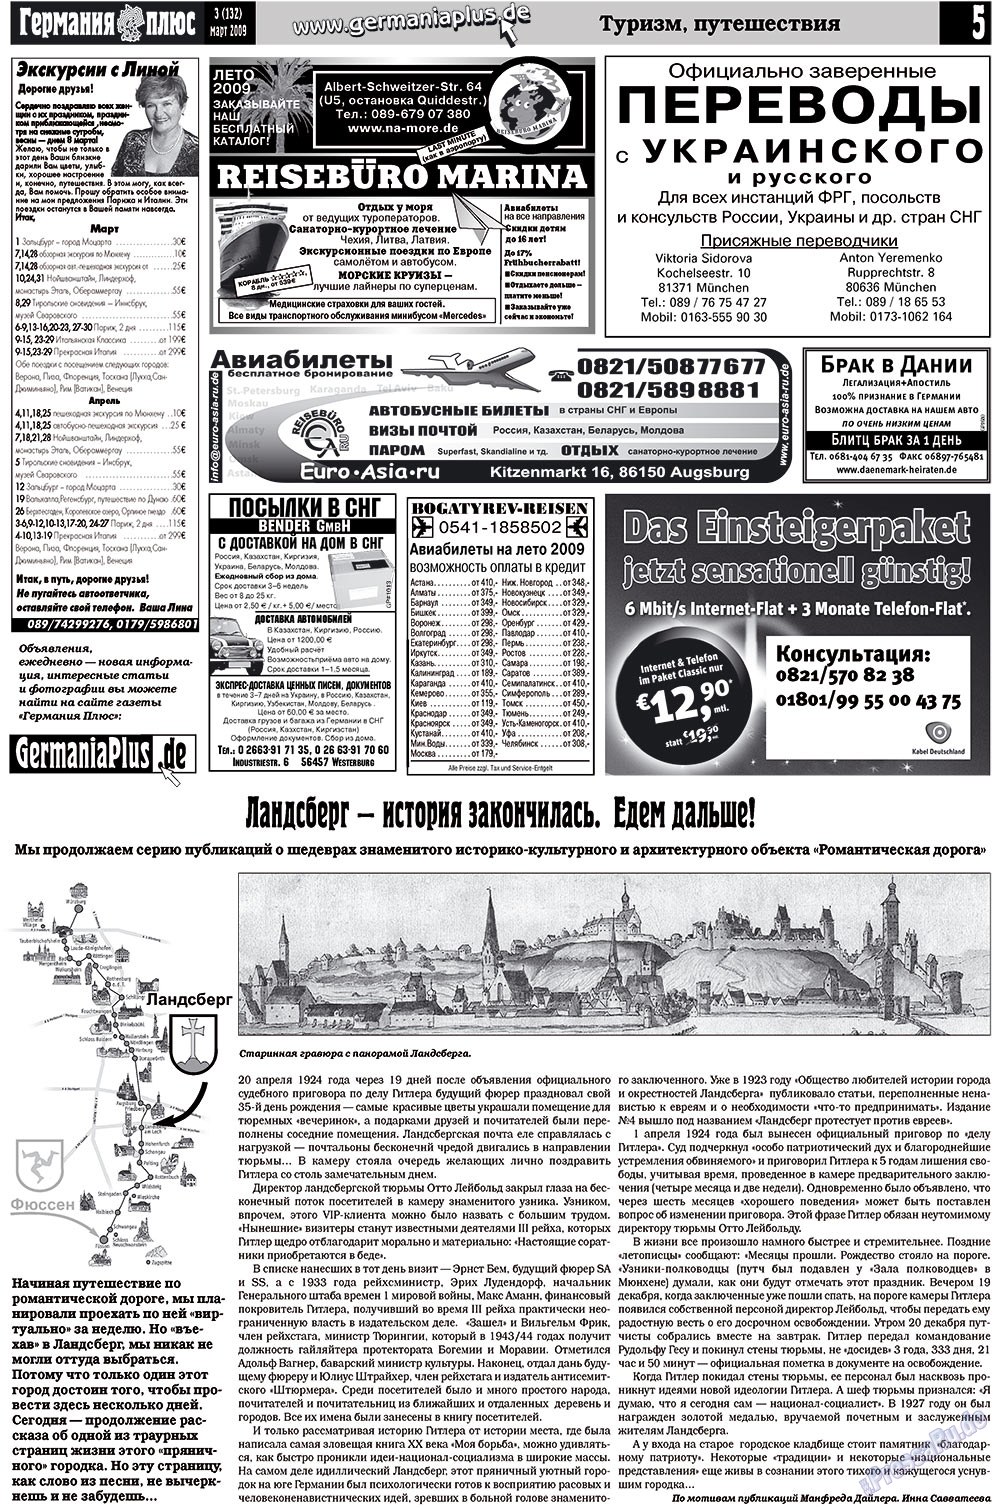 Германия плюс (газета). 2009 год, номер 3, стр. 5